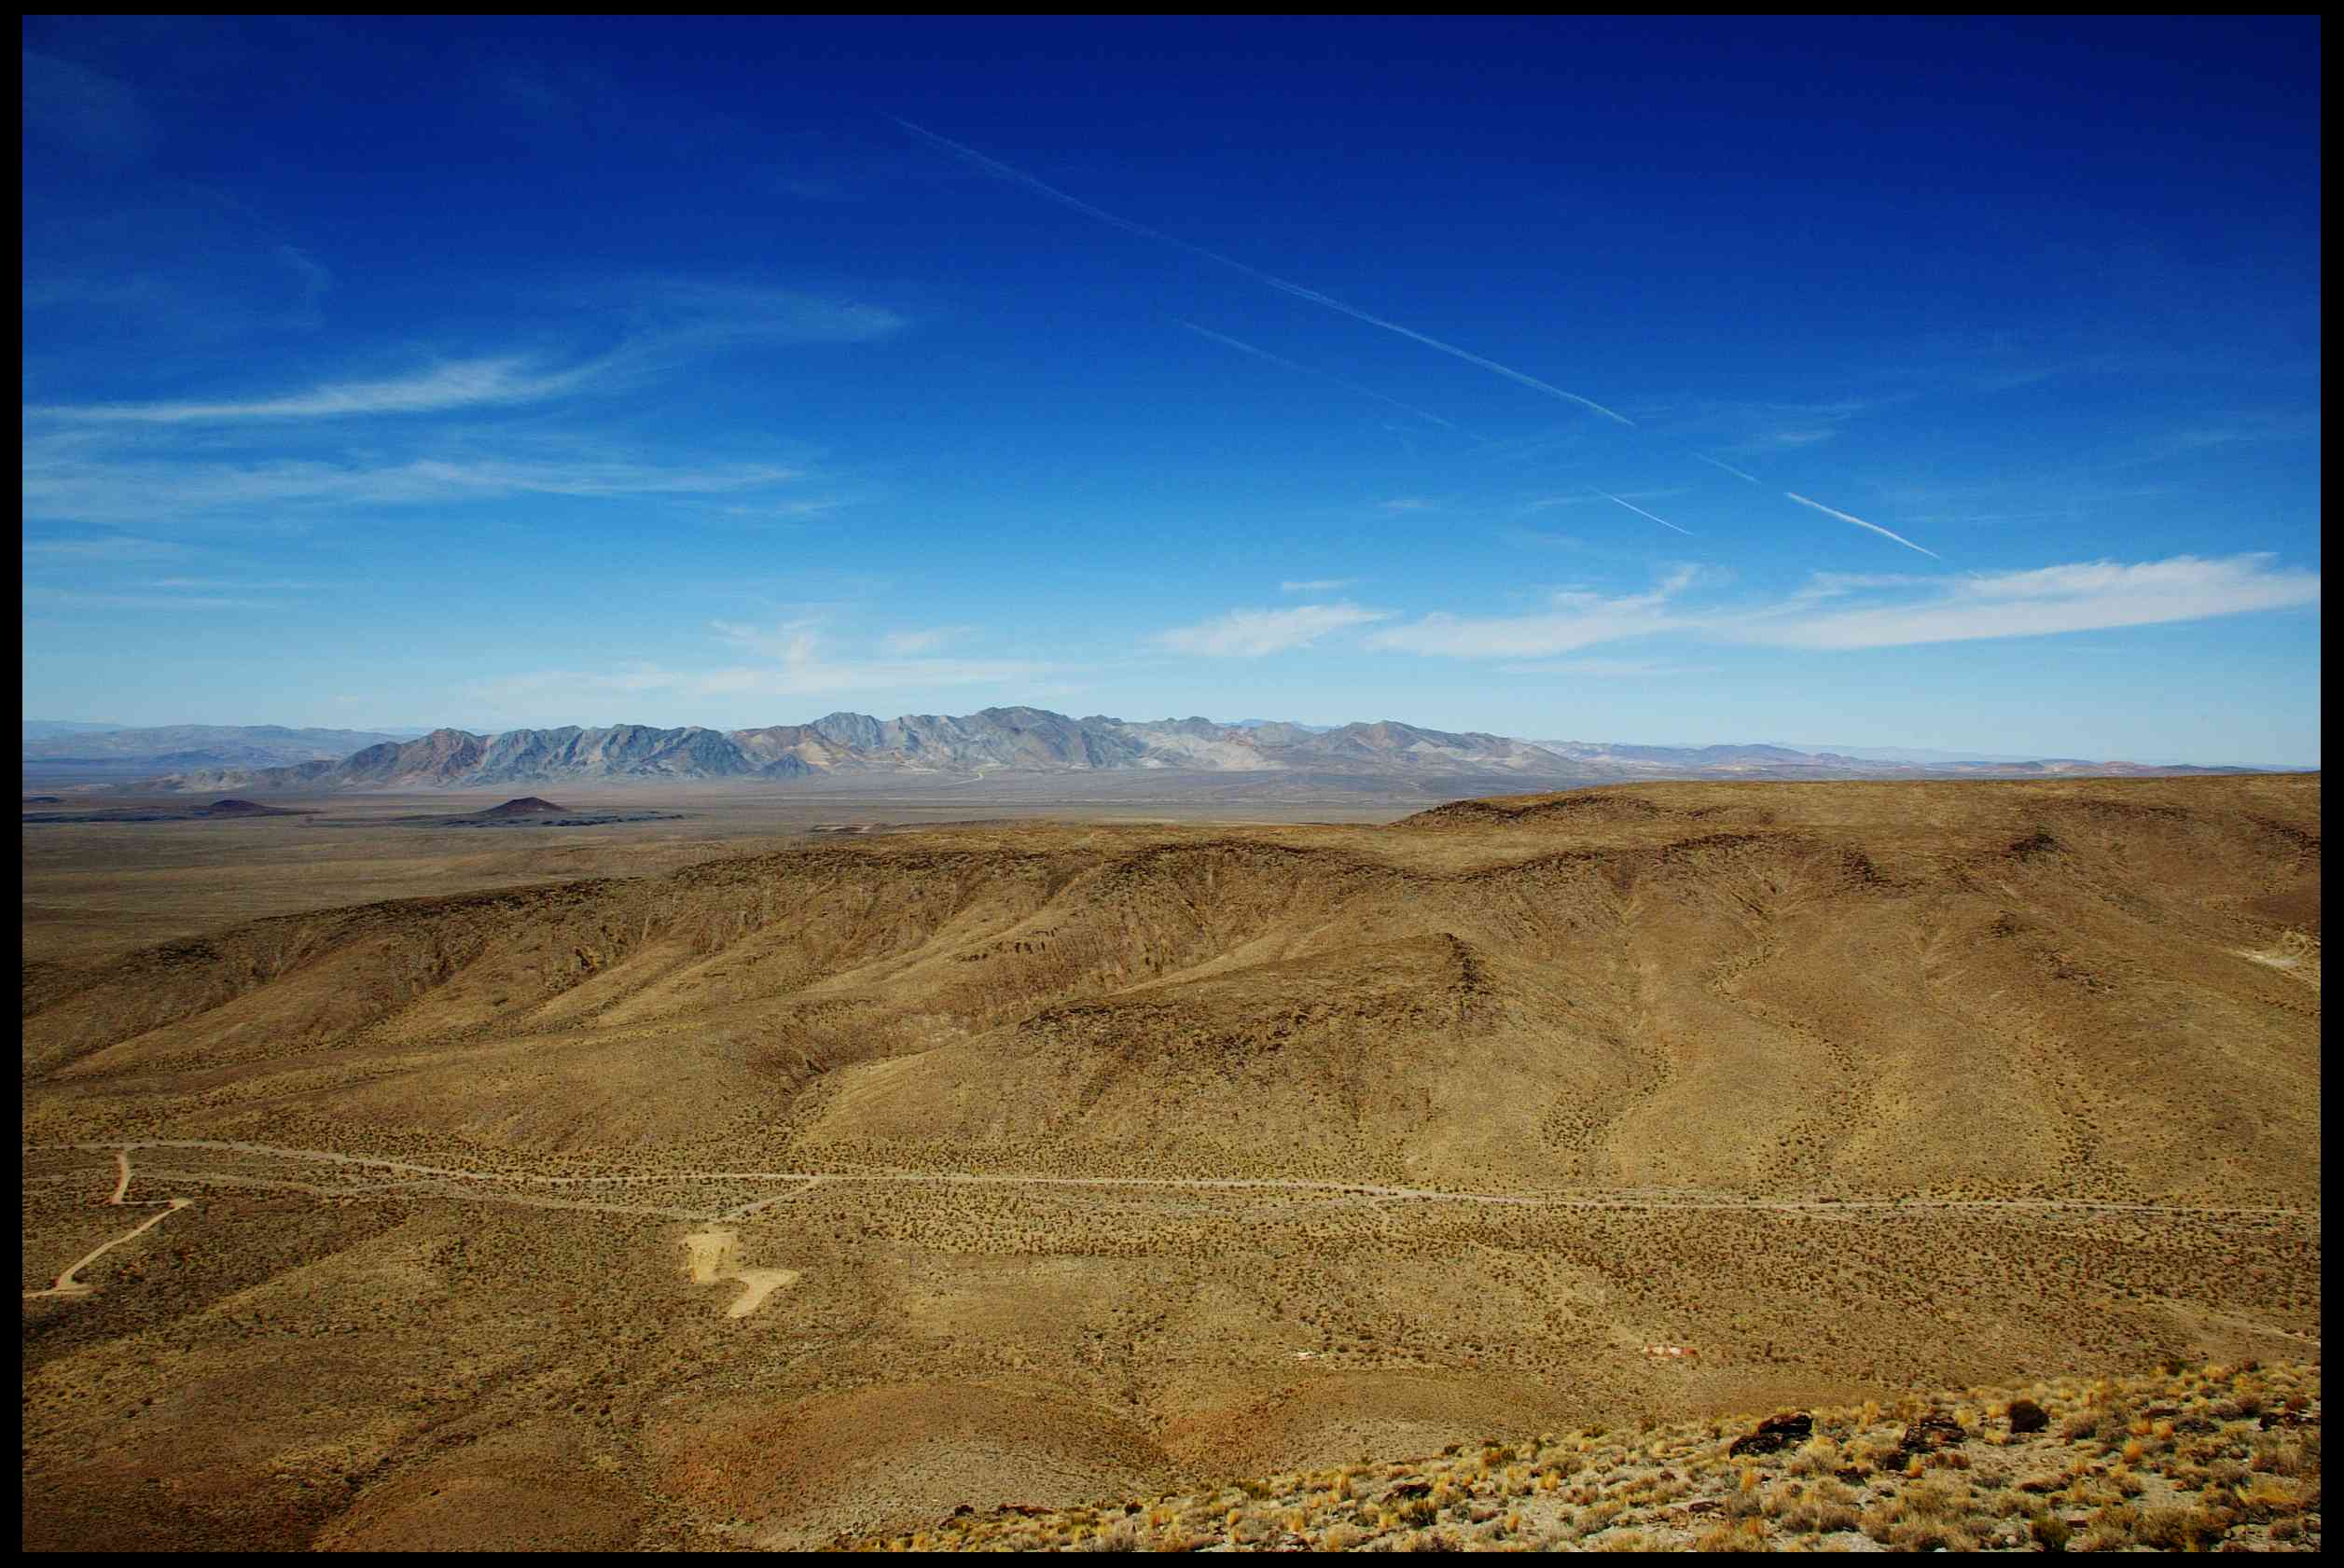 La vista desde la cima del depósito de residuos nucleares de Yucca Mountain en Nevada